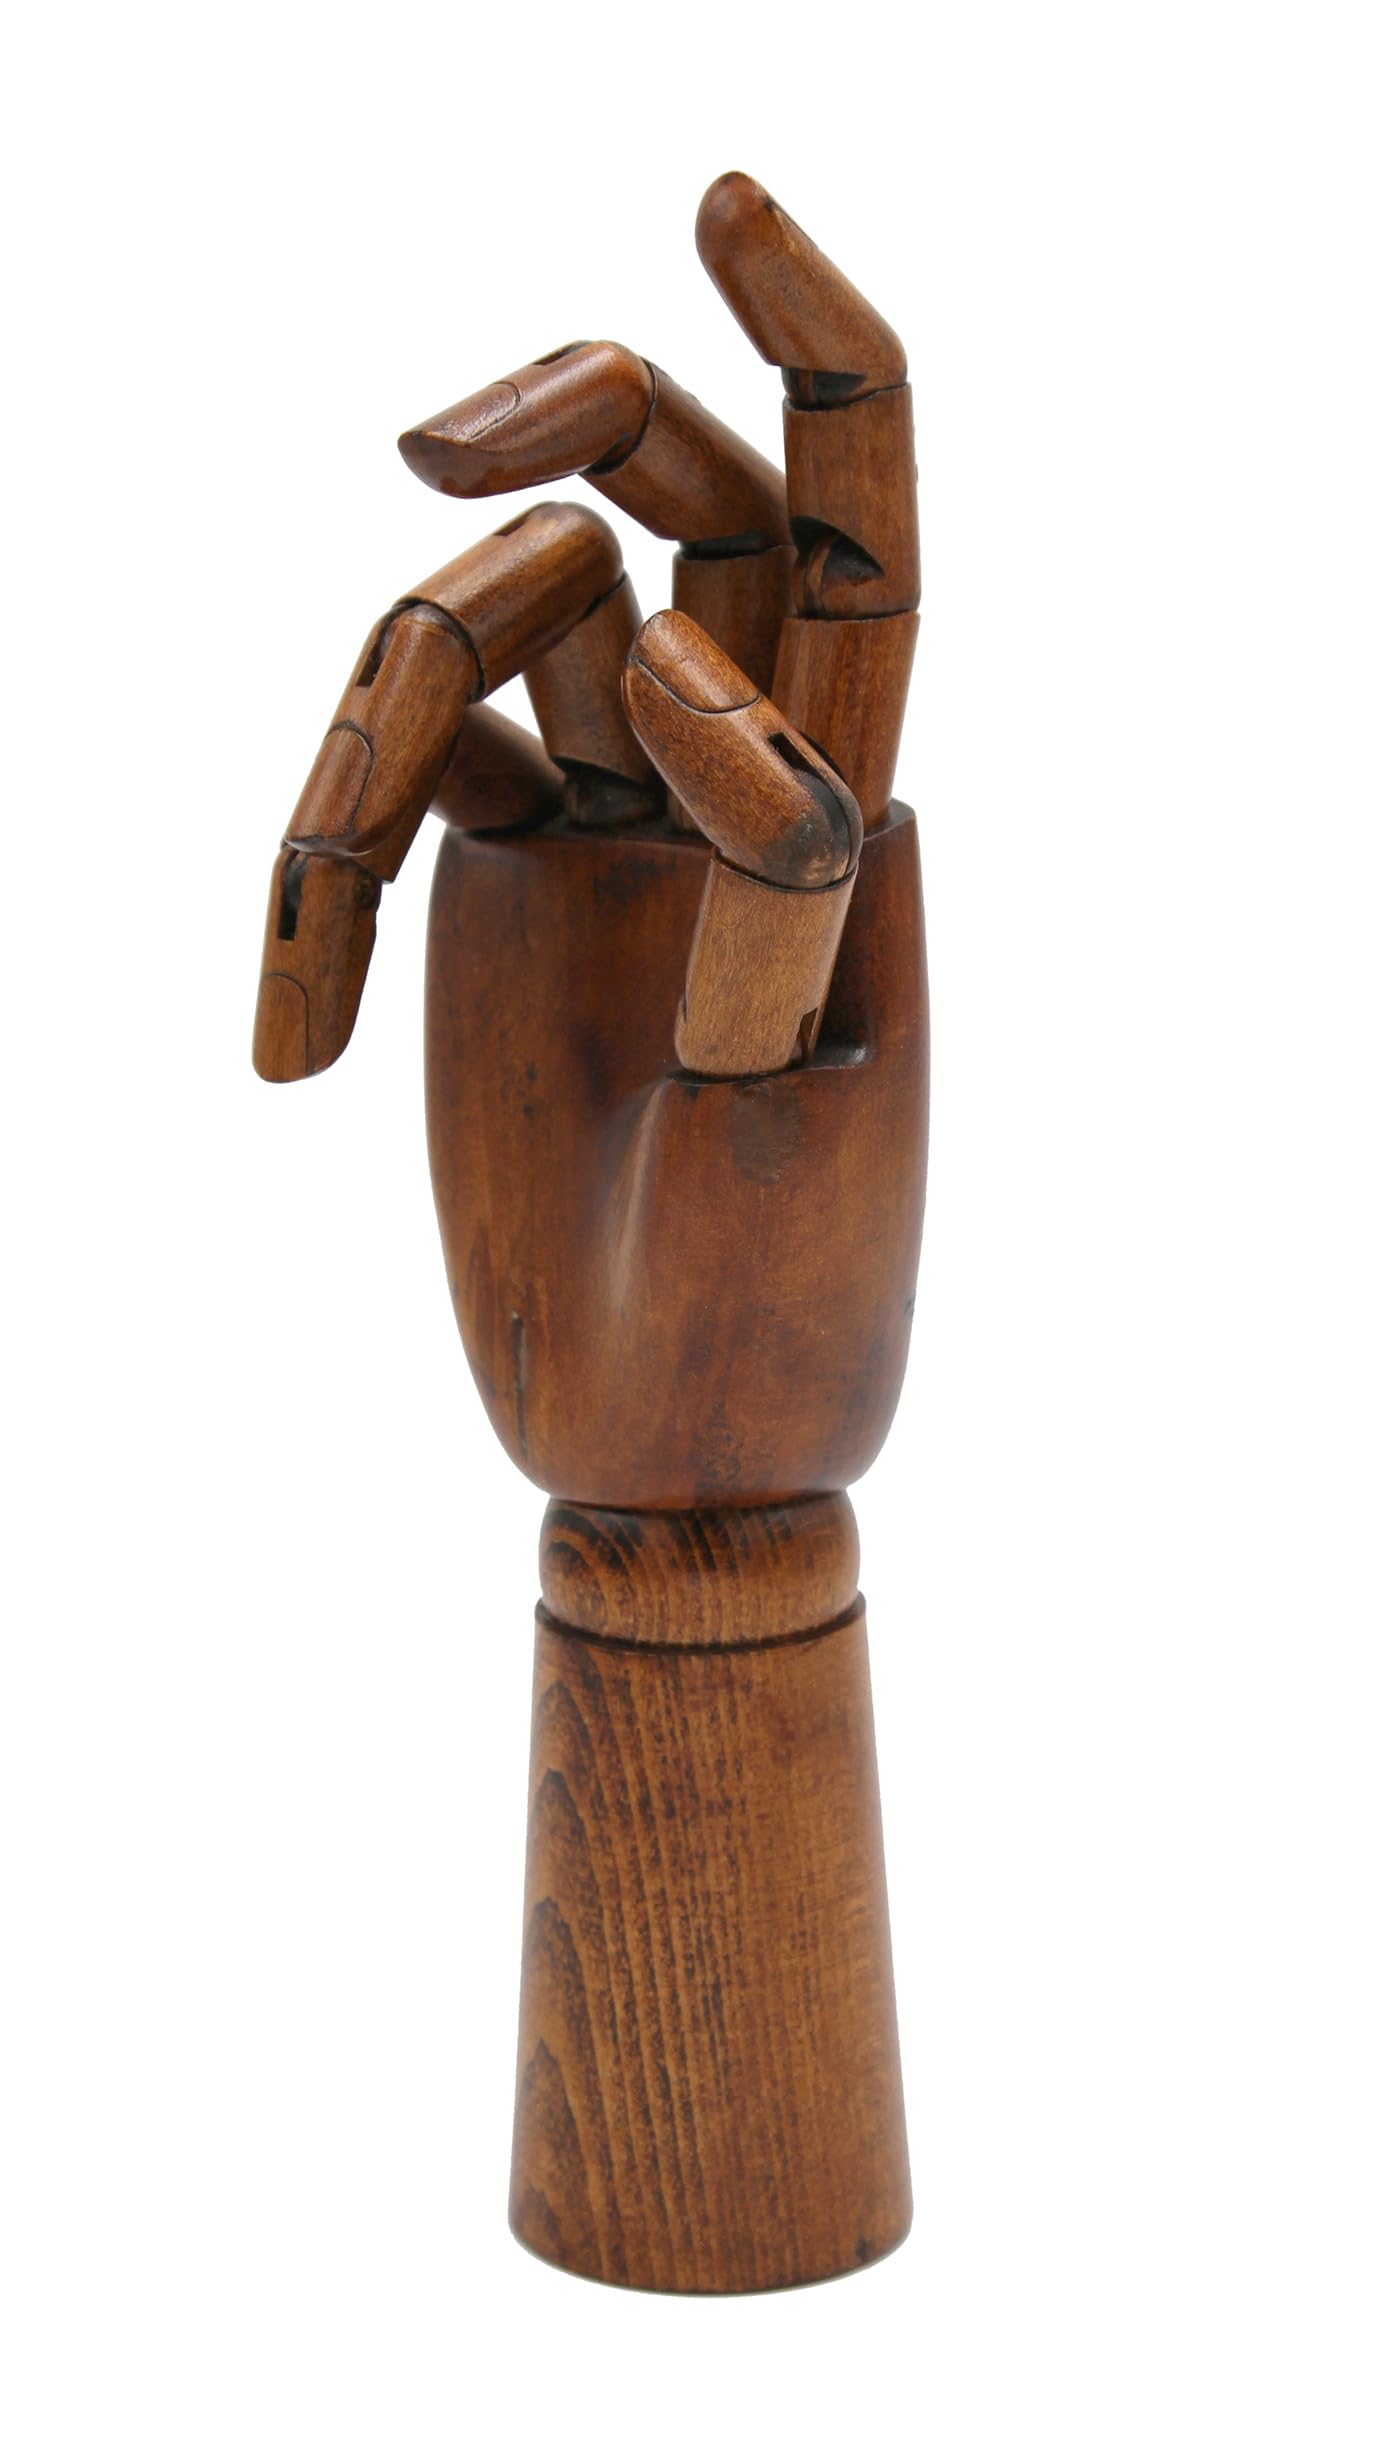 Paintersisters Gliederhand im Vintage Stil, 30 cm Rechts, Holzhand beweglich, Modellhand Mannequin Handmodell Zeichenpuppe dunkel